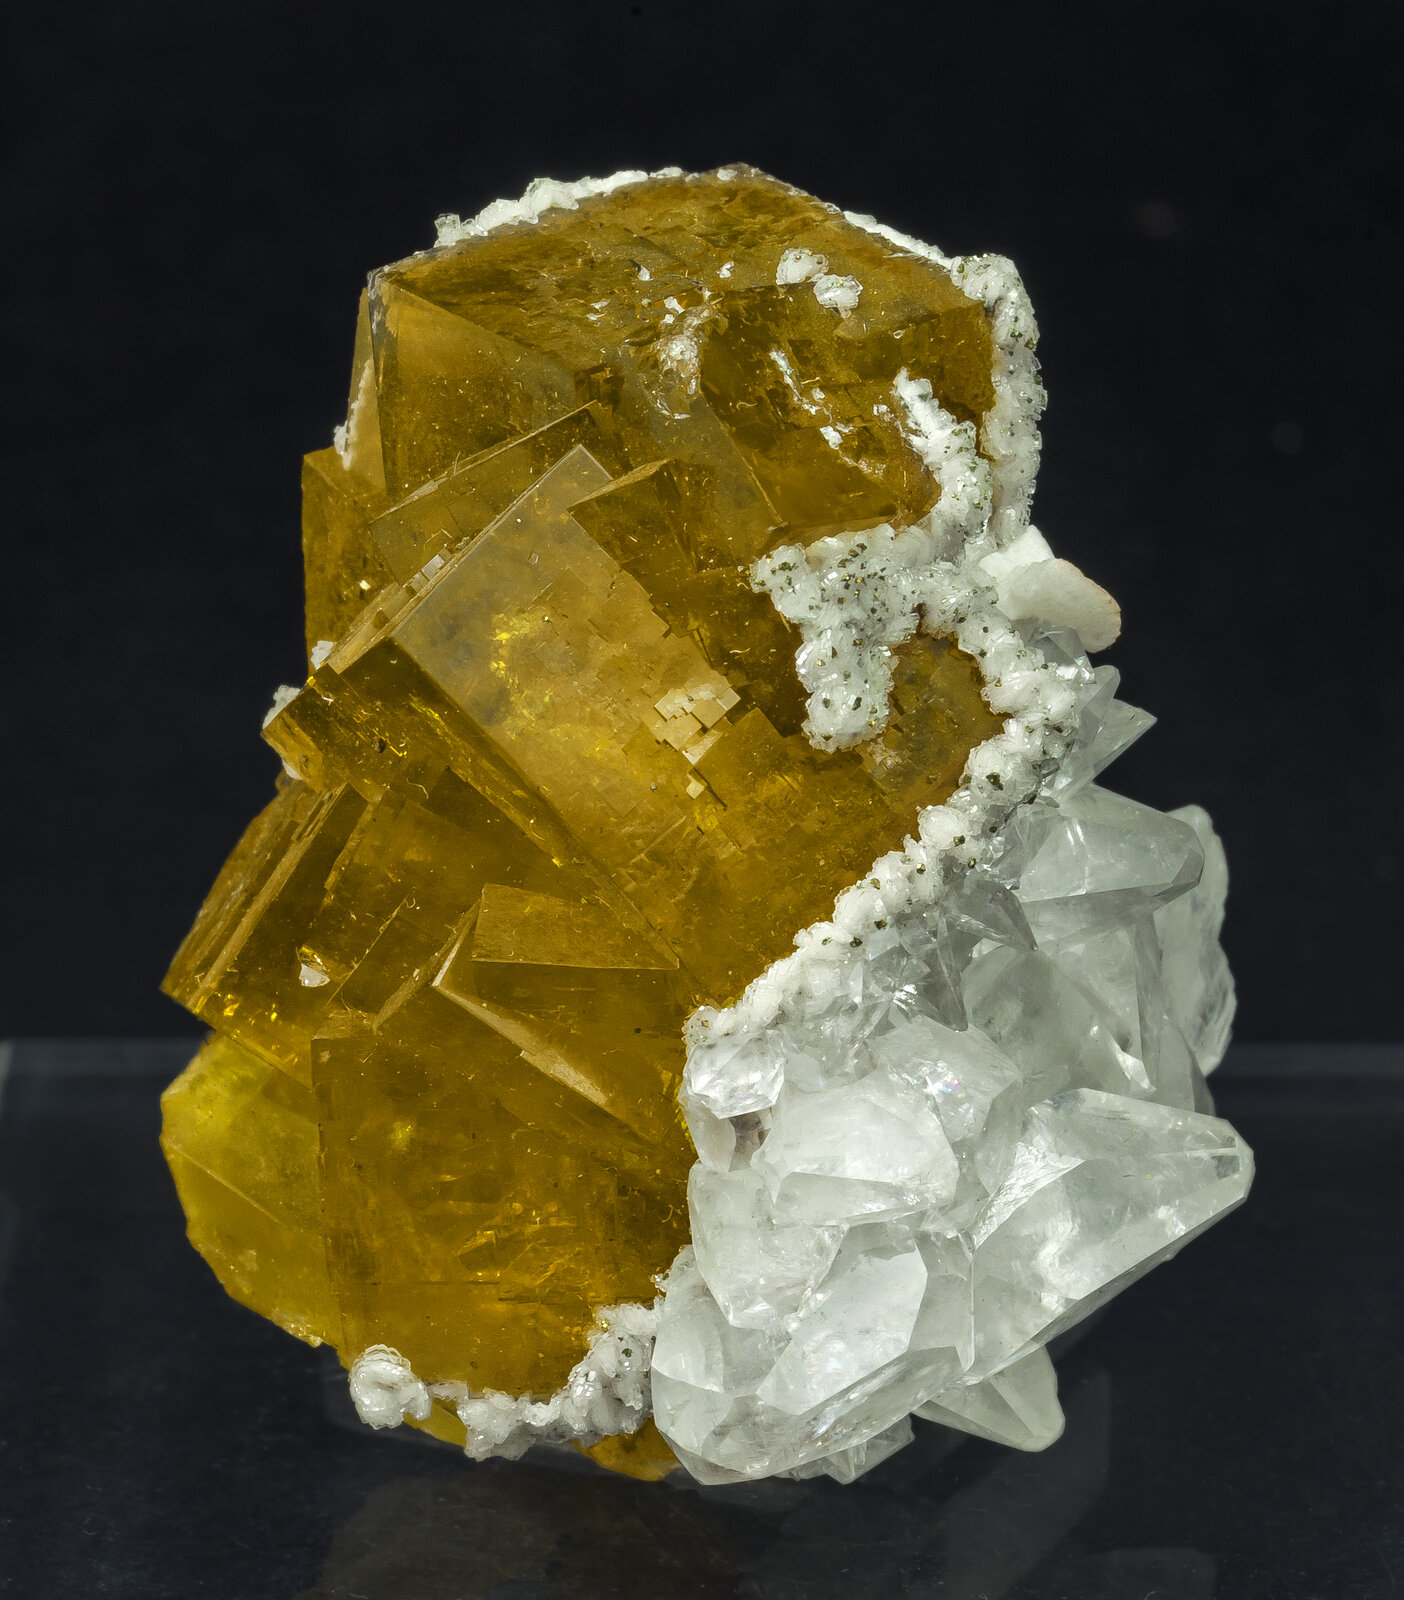 specimens/s_imagesAO8/Fluorite-JFD158AO8f.jpg